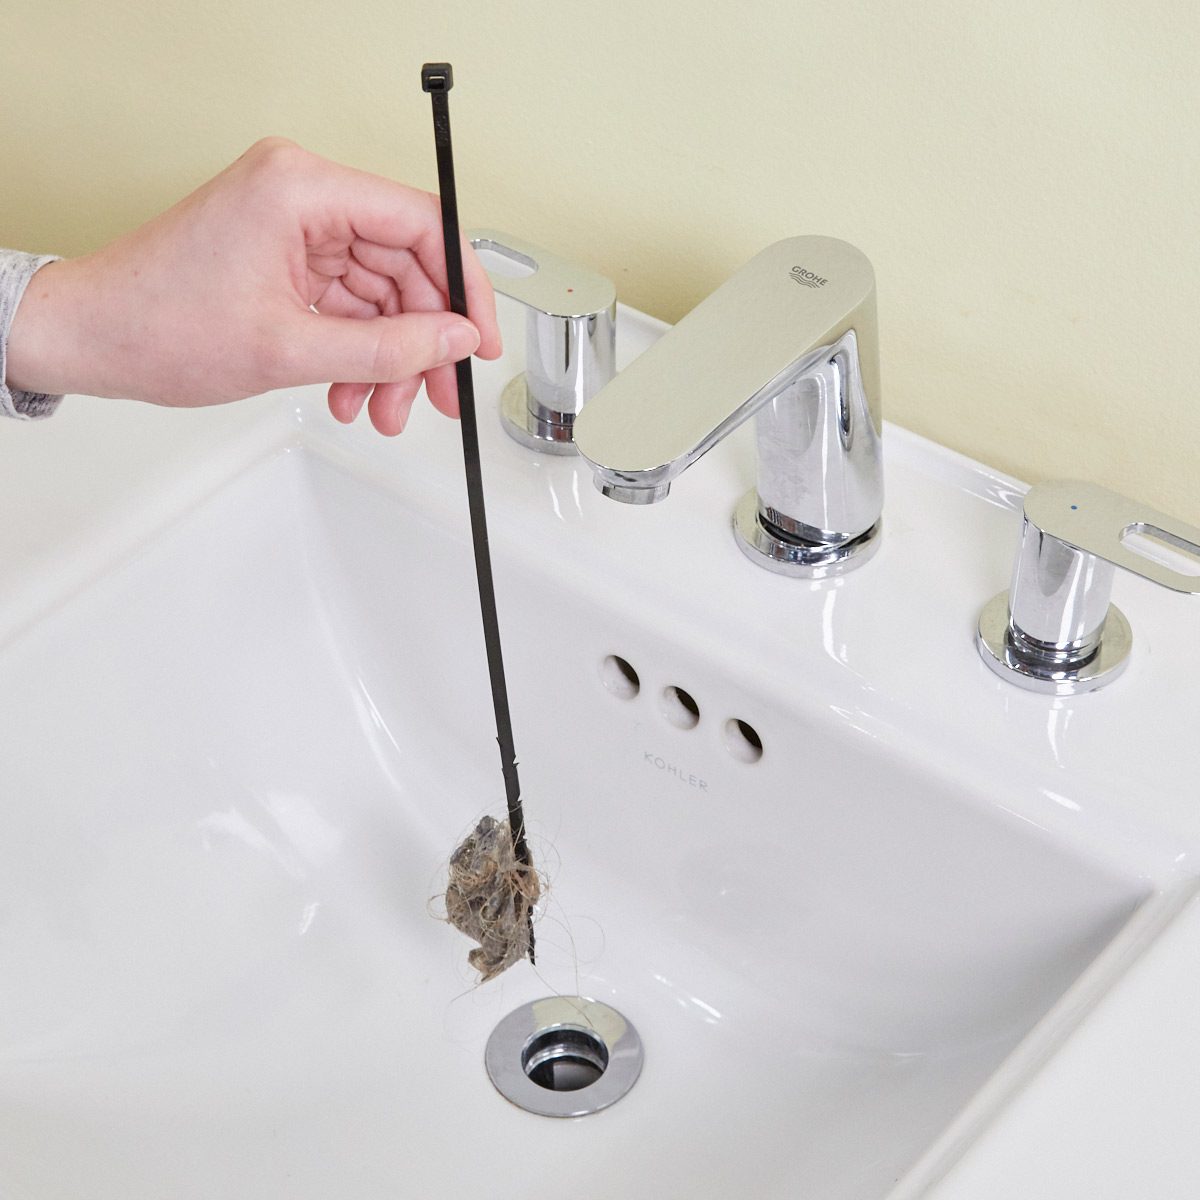 Simple bathroom sink drain cleaner